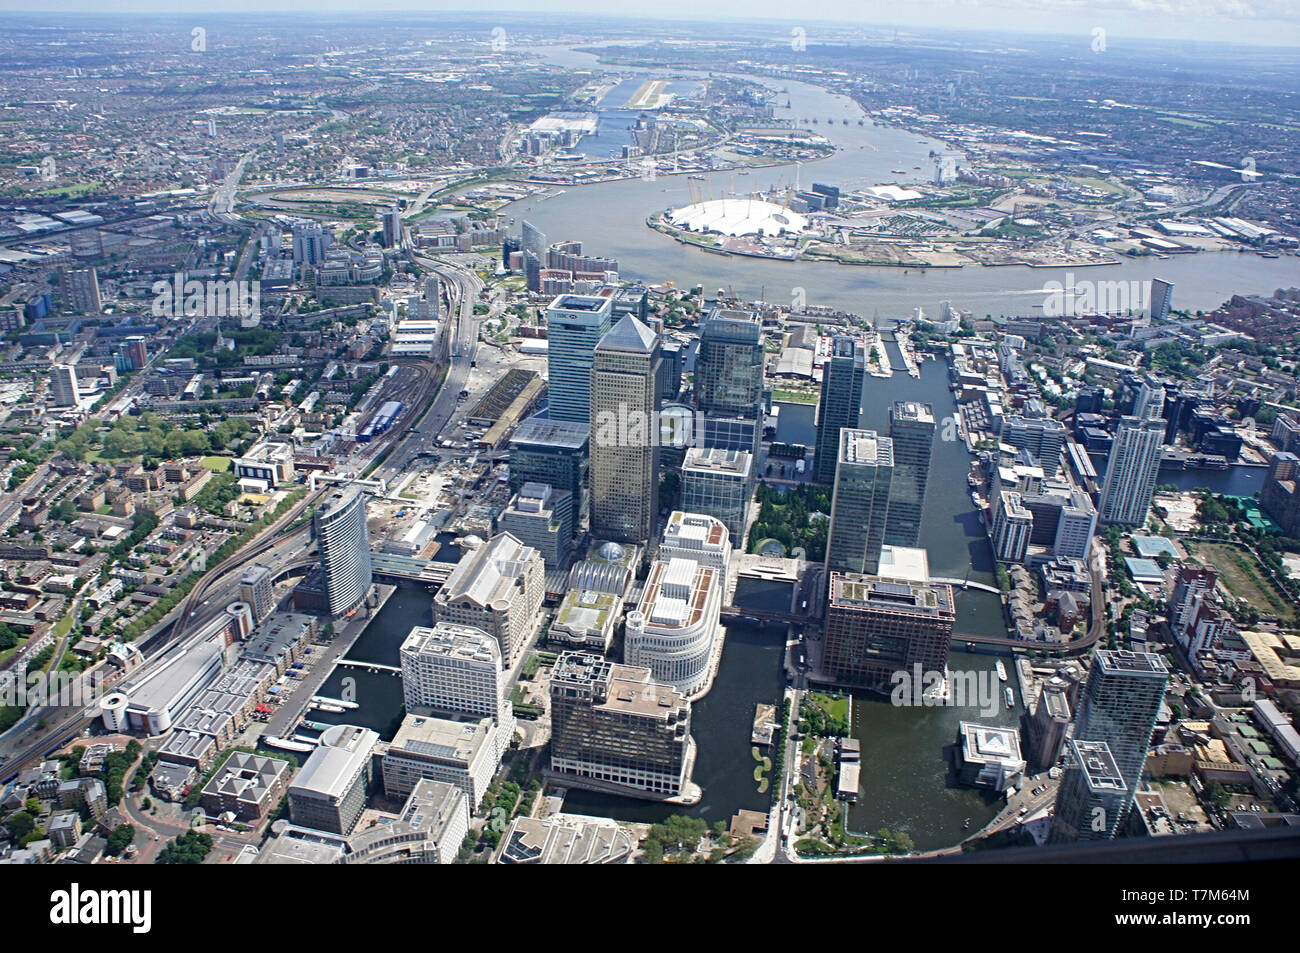 Le quartier financier de Canary Wharf Londres prises à partir de l'air et à la recherche sur la Tamise à Greenwich et l'O2 arena Banque D'Images